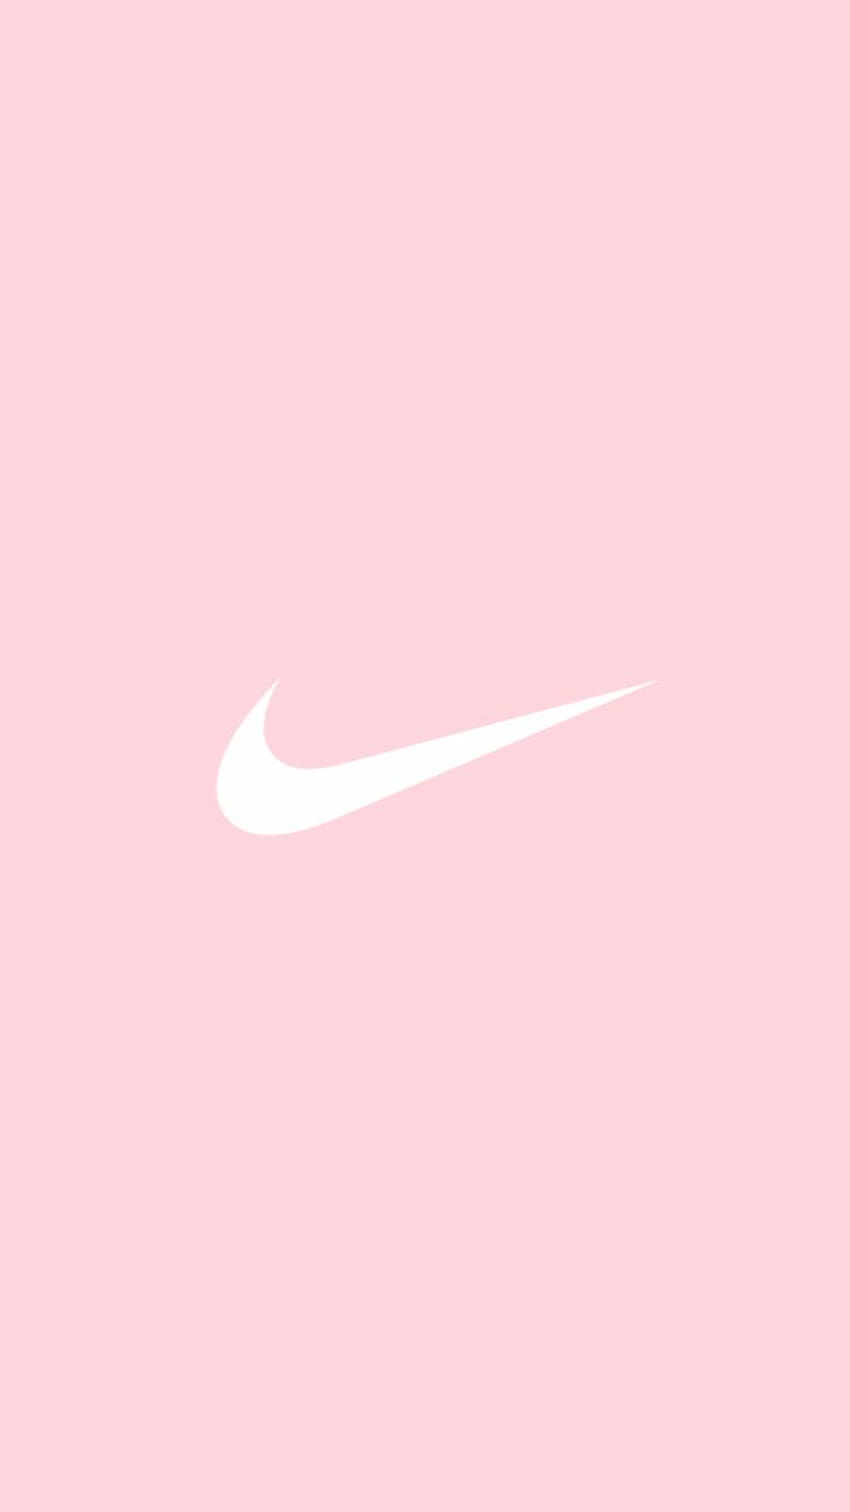 Hãy cùng cảm nhận vẻ đẹp tuyệt hảo của hình nền Nike logo hồng HD này. Với độ phân giải cao, đặc biệt là màu hồng nổi bật và trẻ trung của logo Nike, hình nền này chắc chắn sẽ tạo nên ấn tượng đầu tiên tuyệt vời cho người sử dụng.